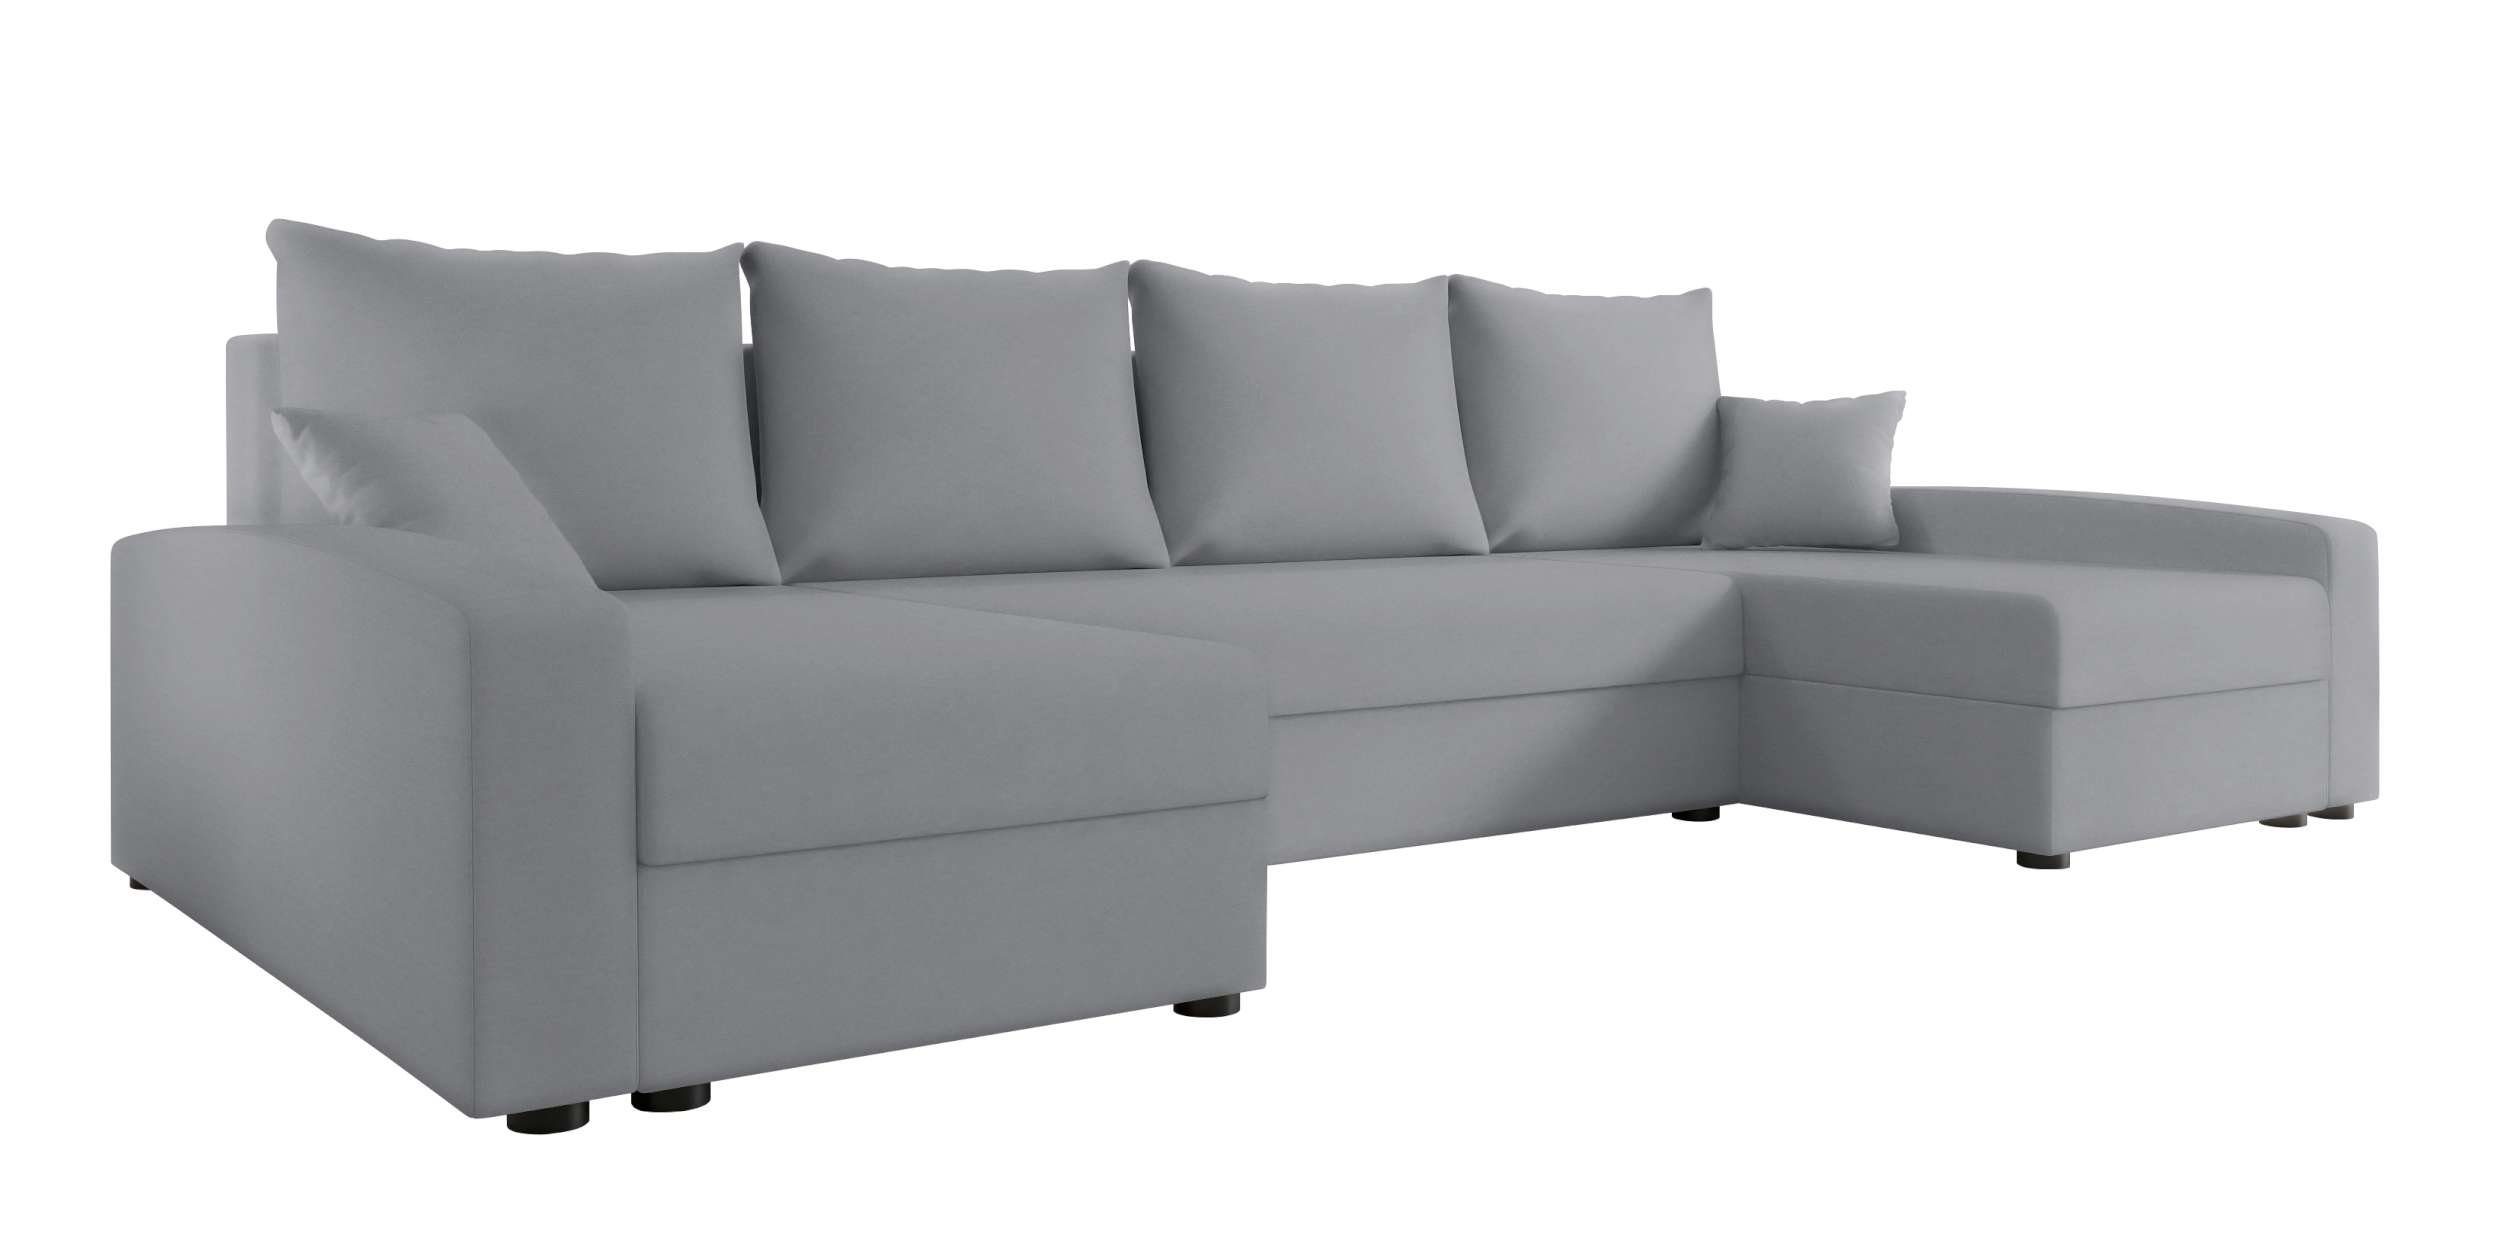 Stylefy mit Design Sofa, Bettfunktion, Wohnlandschaft Sitzkomfort, Addison, Modern mit Eckcouch, U-Form, Bettkasten,